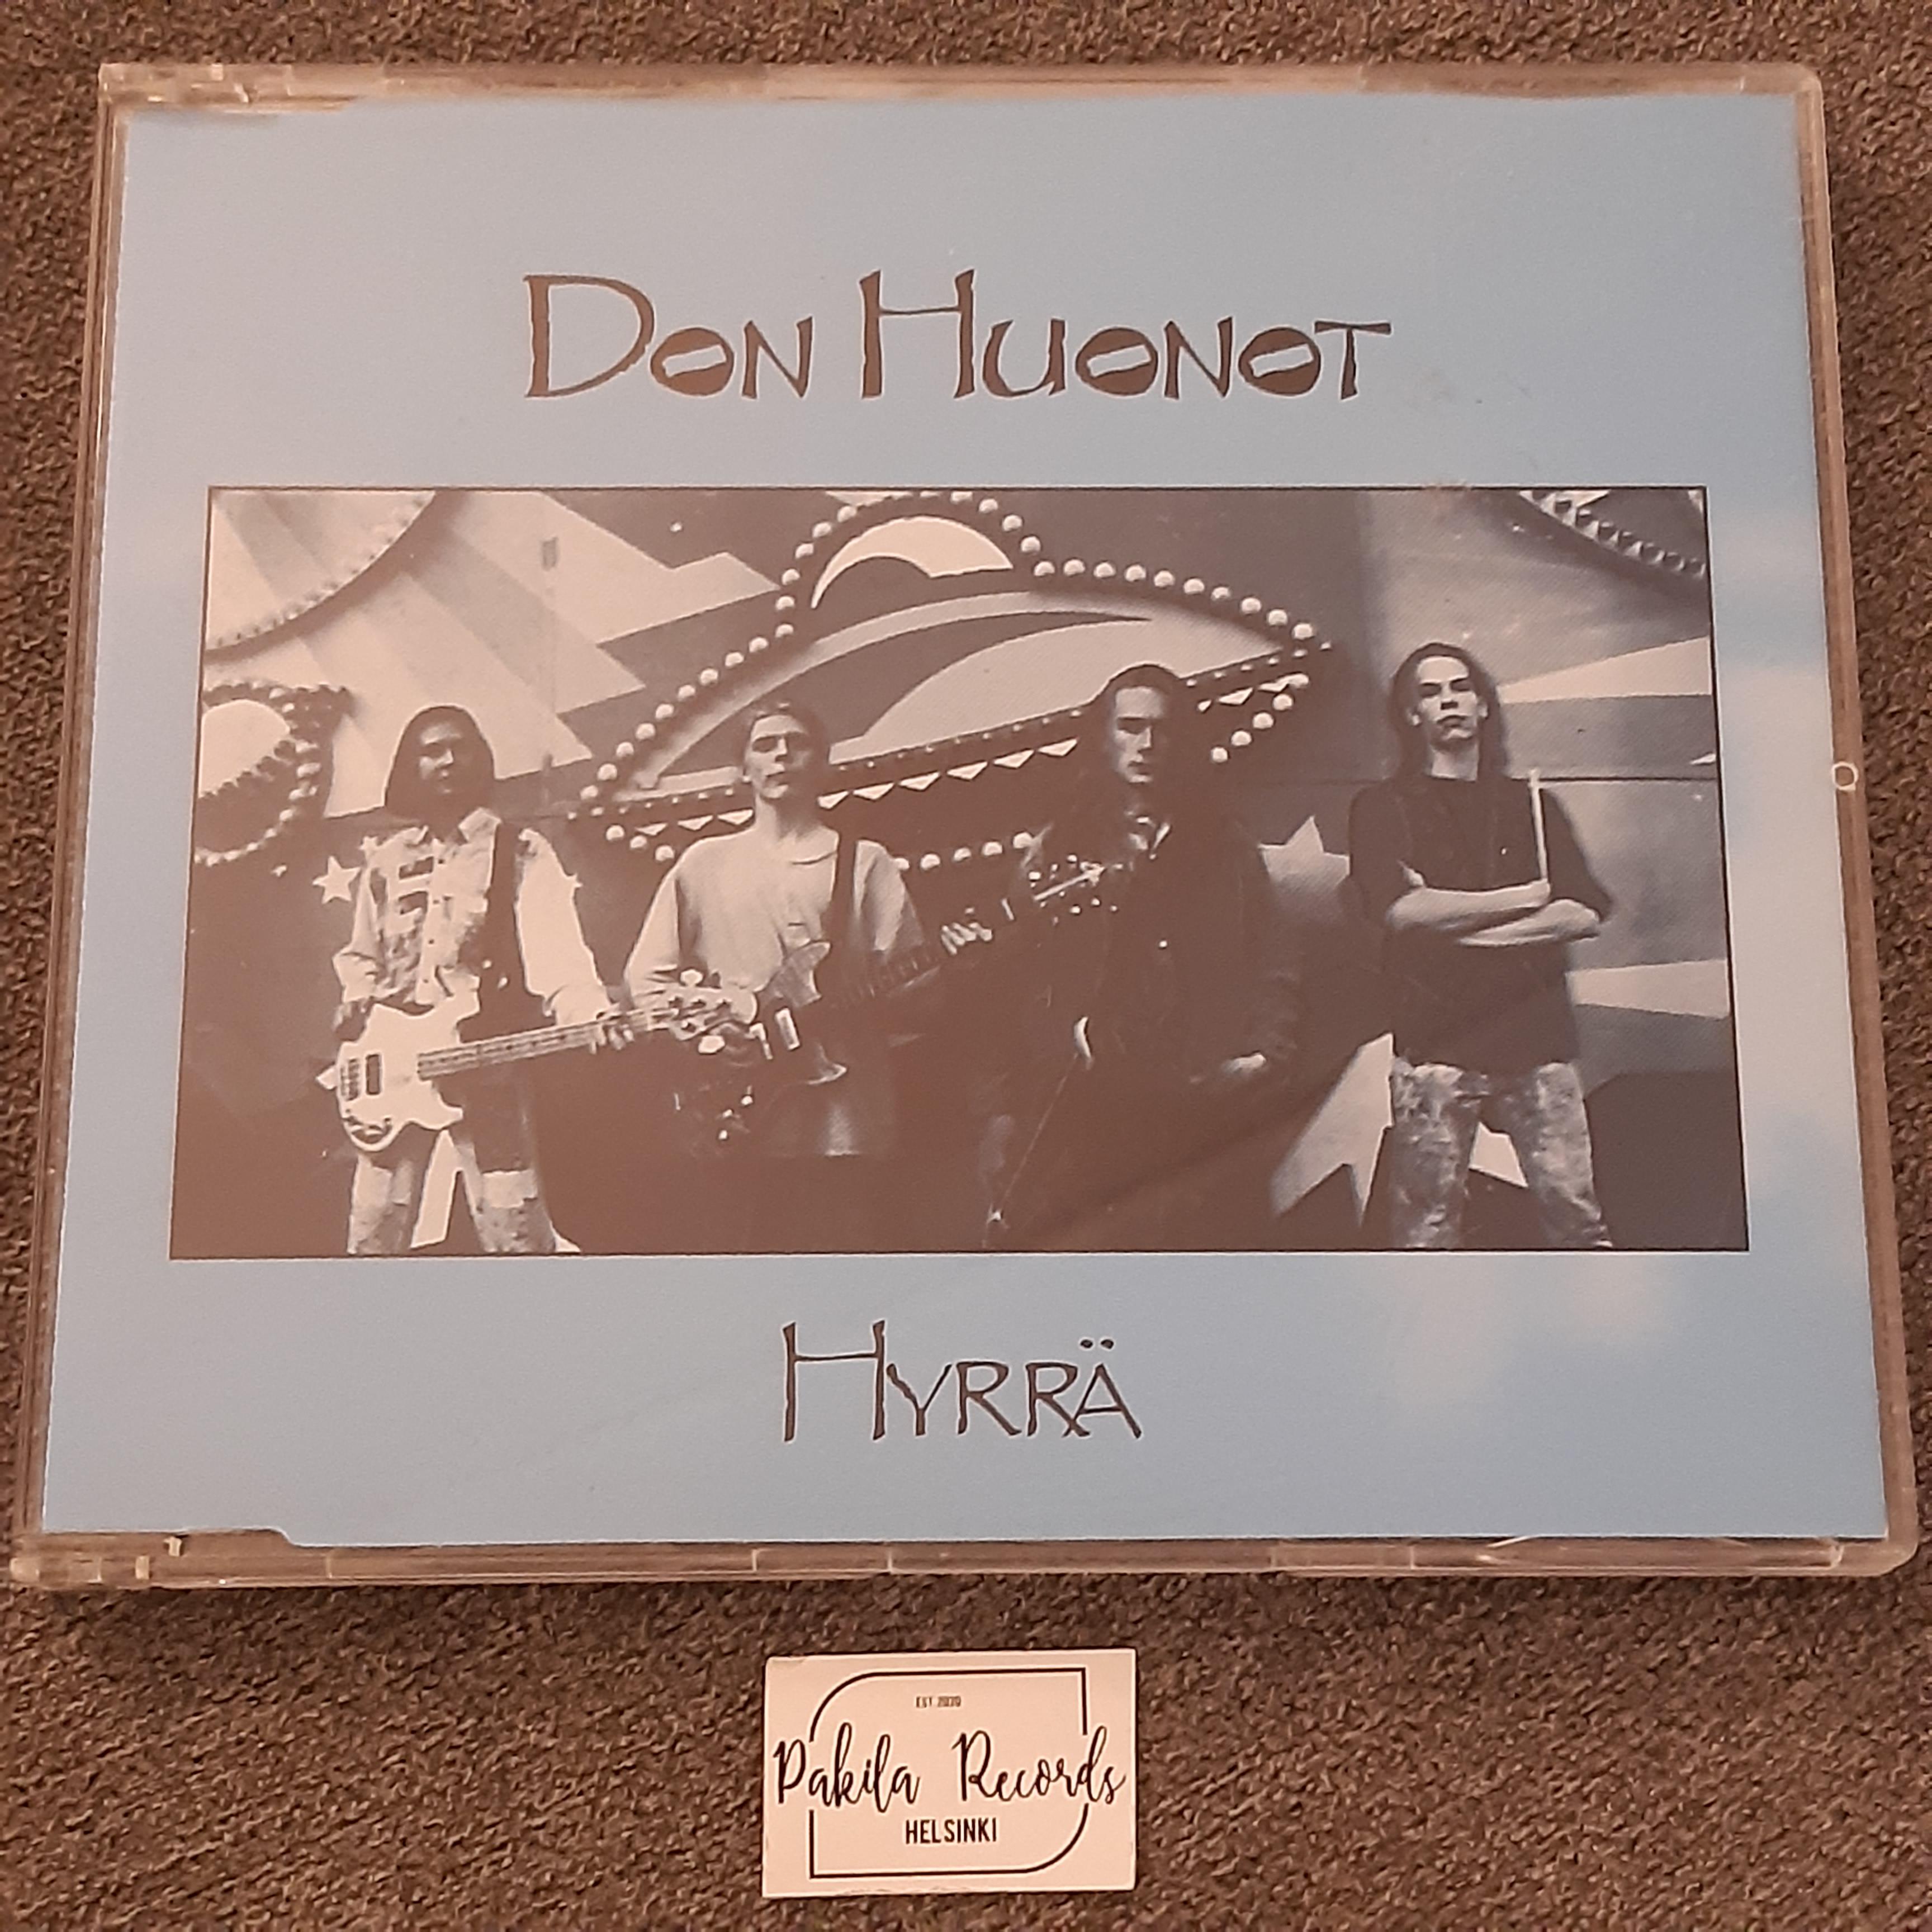 Don Huonot - Hyrrä - CDS (käytetty)